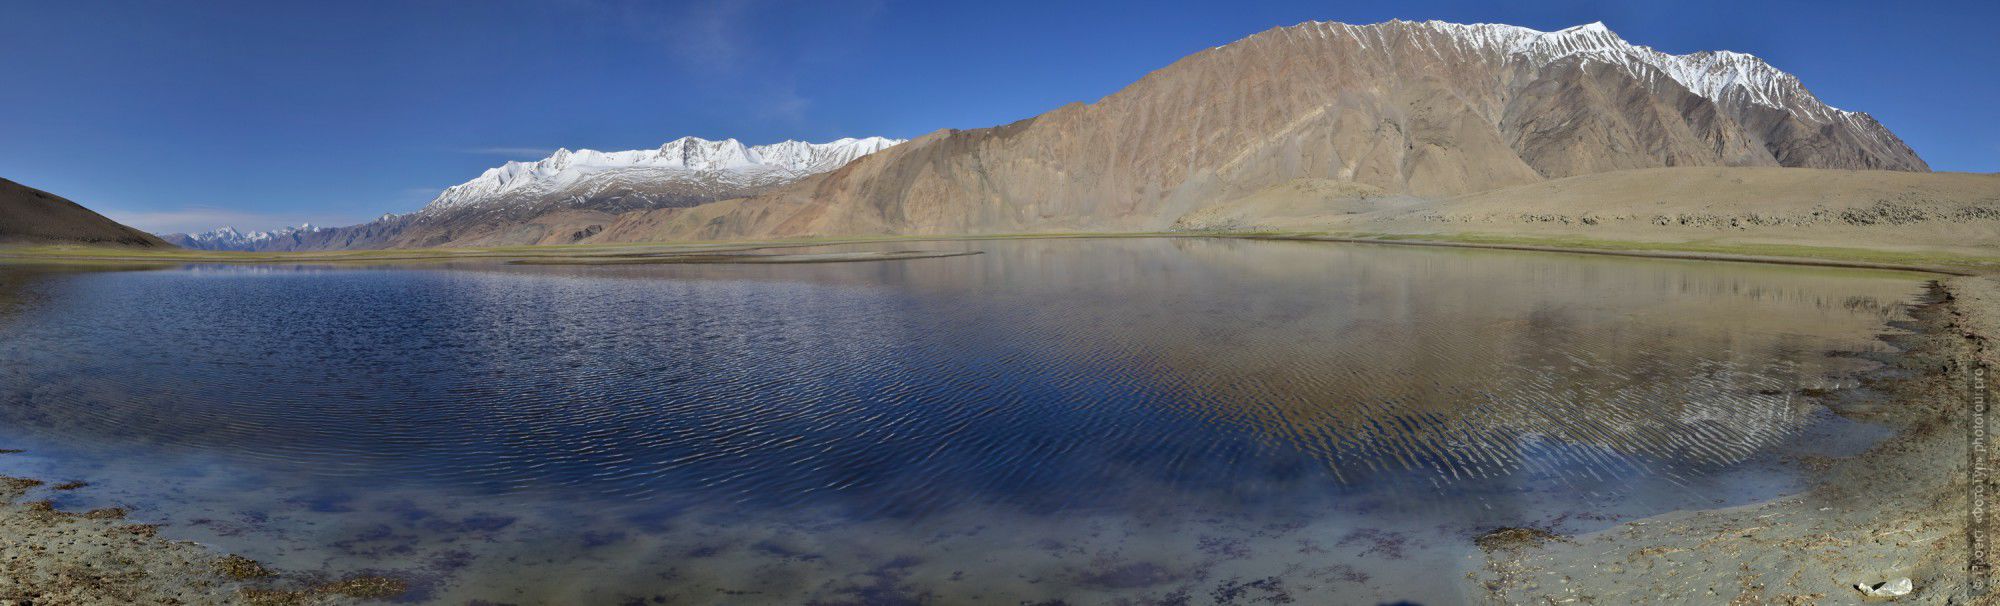 Фотография Ясное озеро Цо Морири. Фототур по высокогорным озерам Тибета, Ладакх.